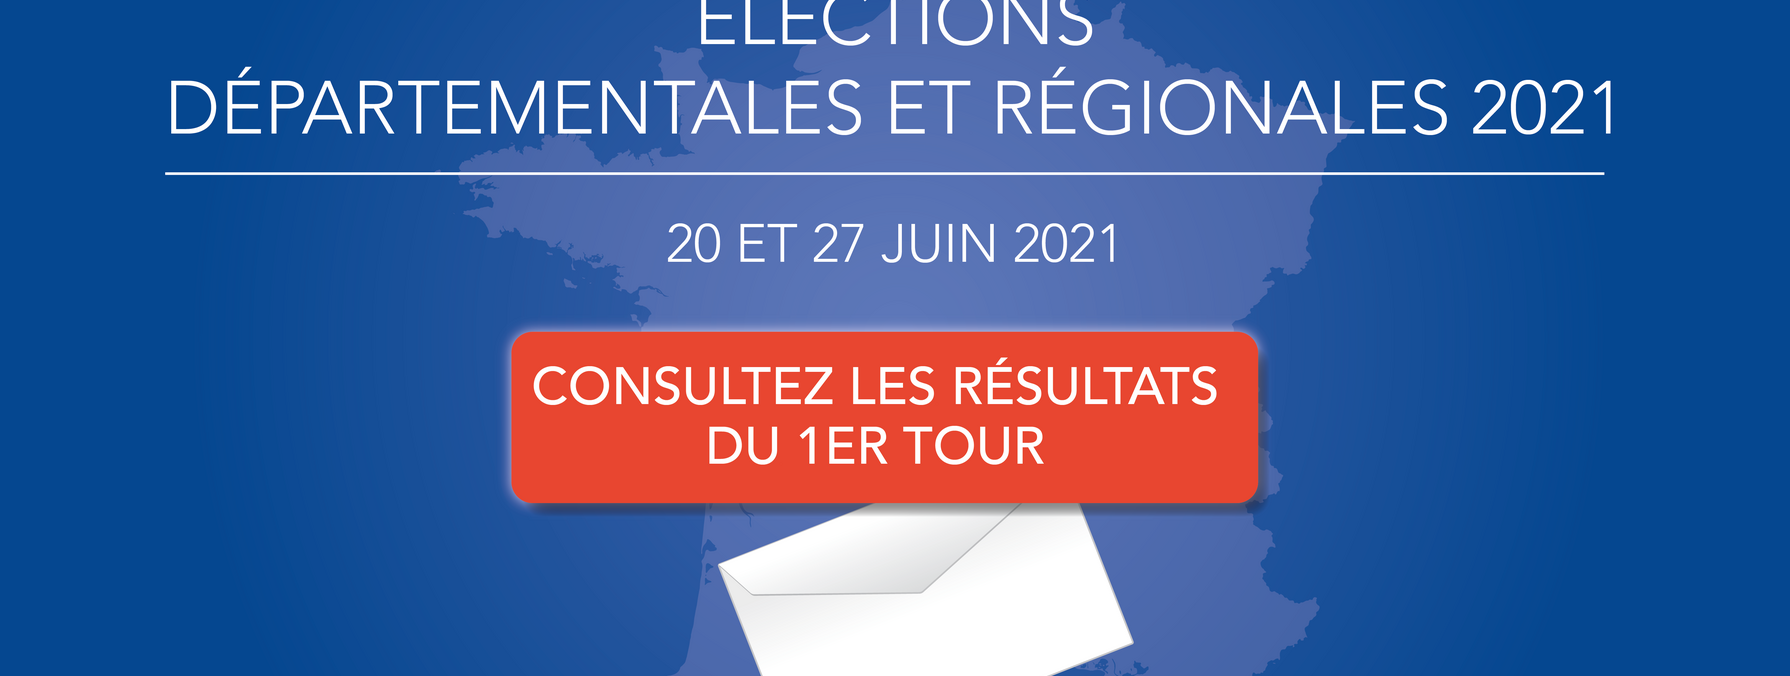 Elections 2021 - résultats du 1er tour